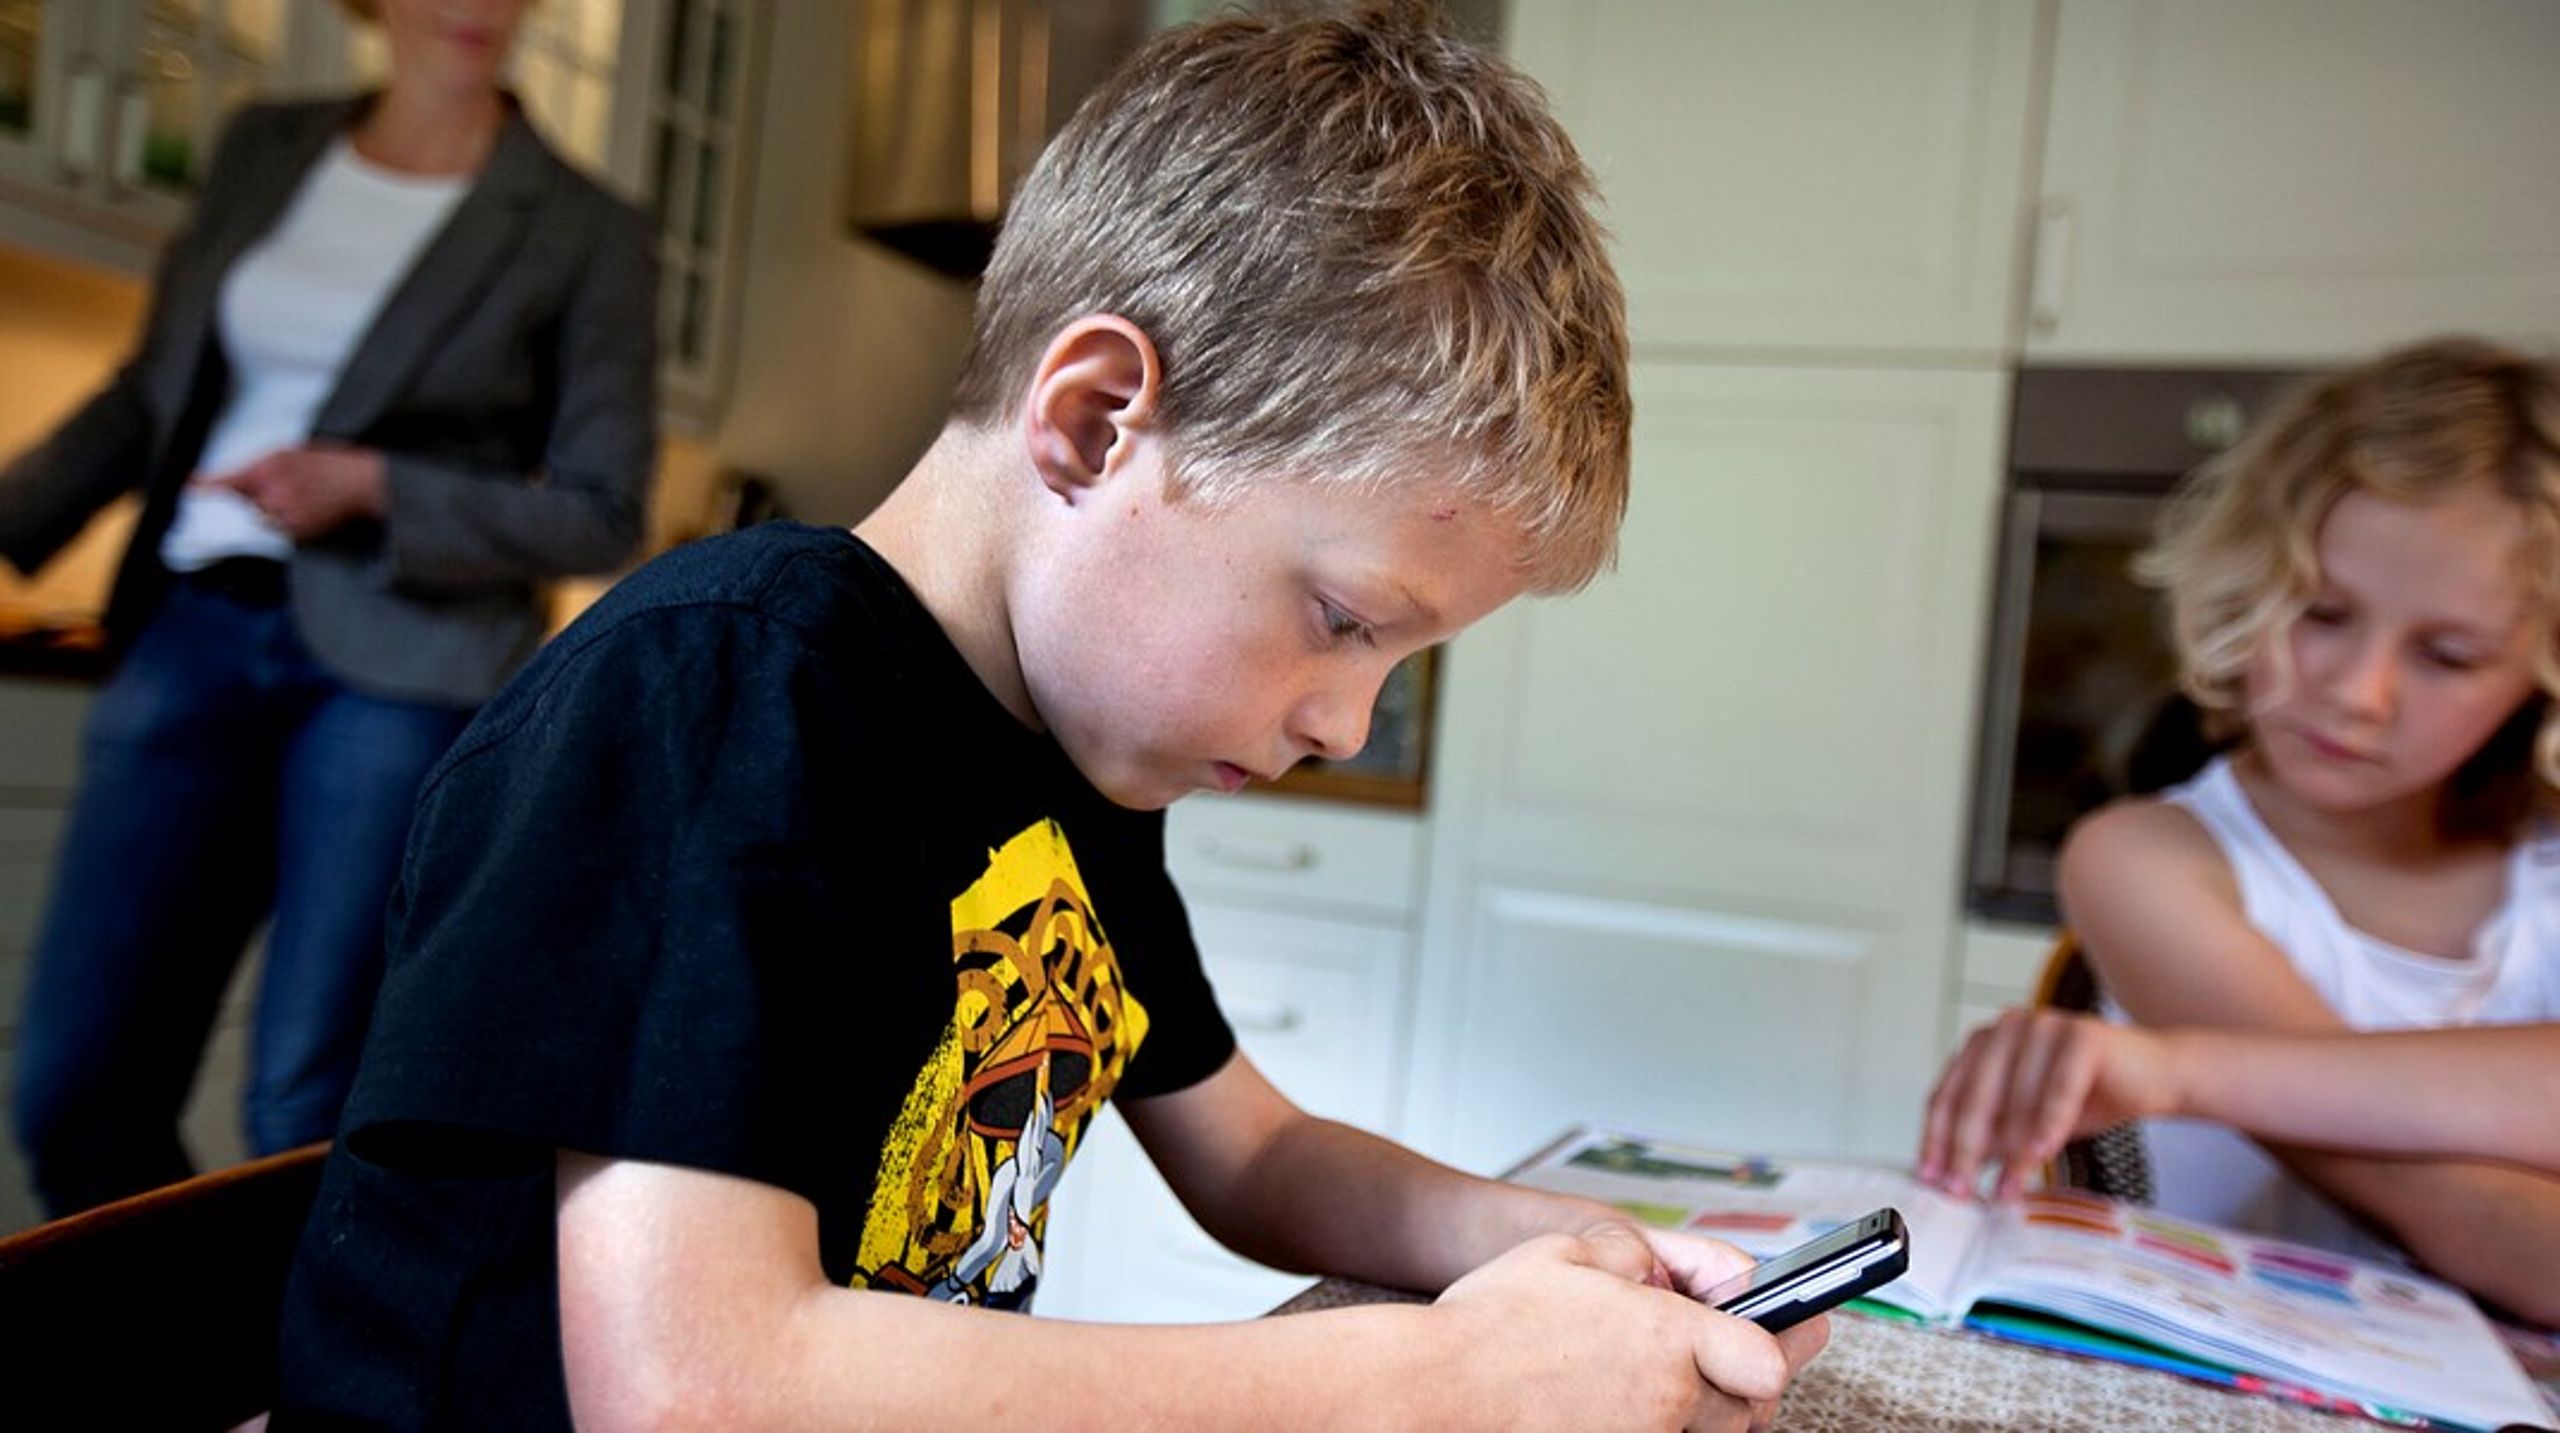 Mens en ny rapport fra Unesco vil forbyde smartphones i skolerne, vil en dansk forsker nu gå et skridt længere.